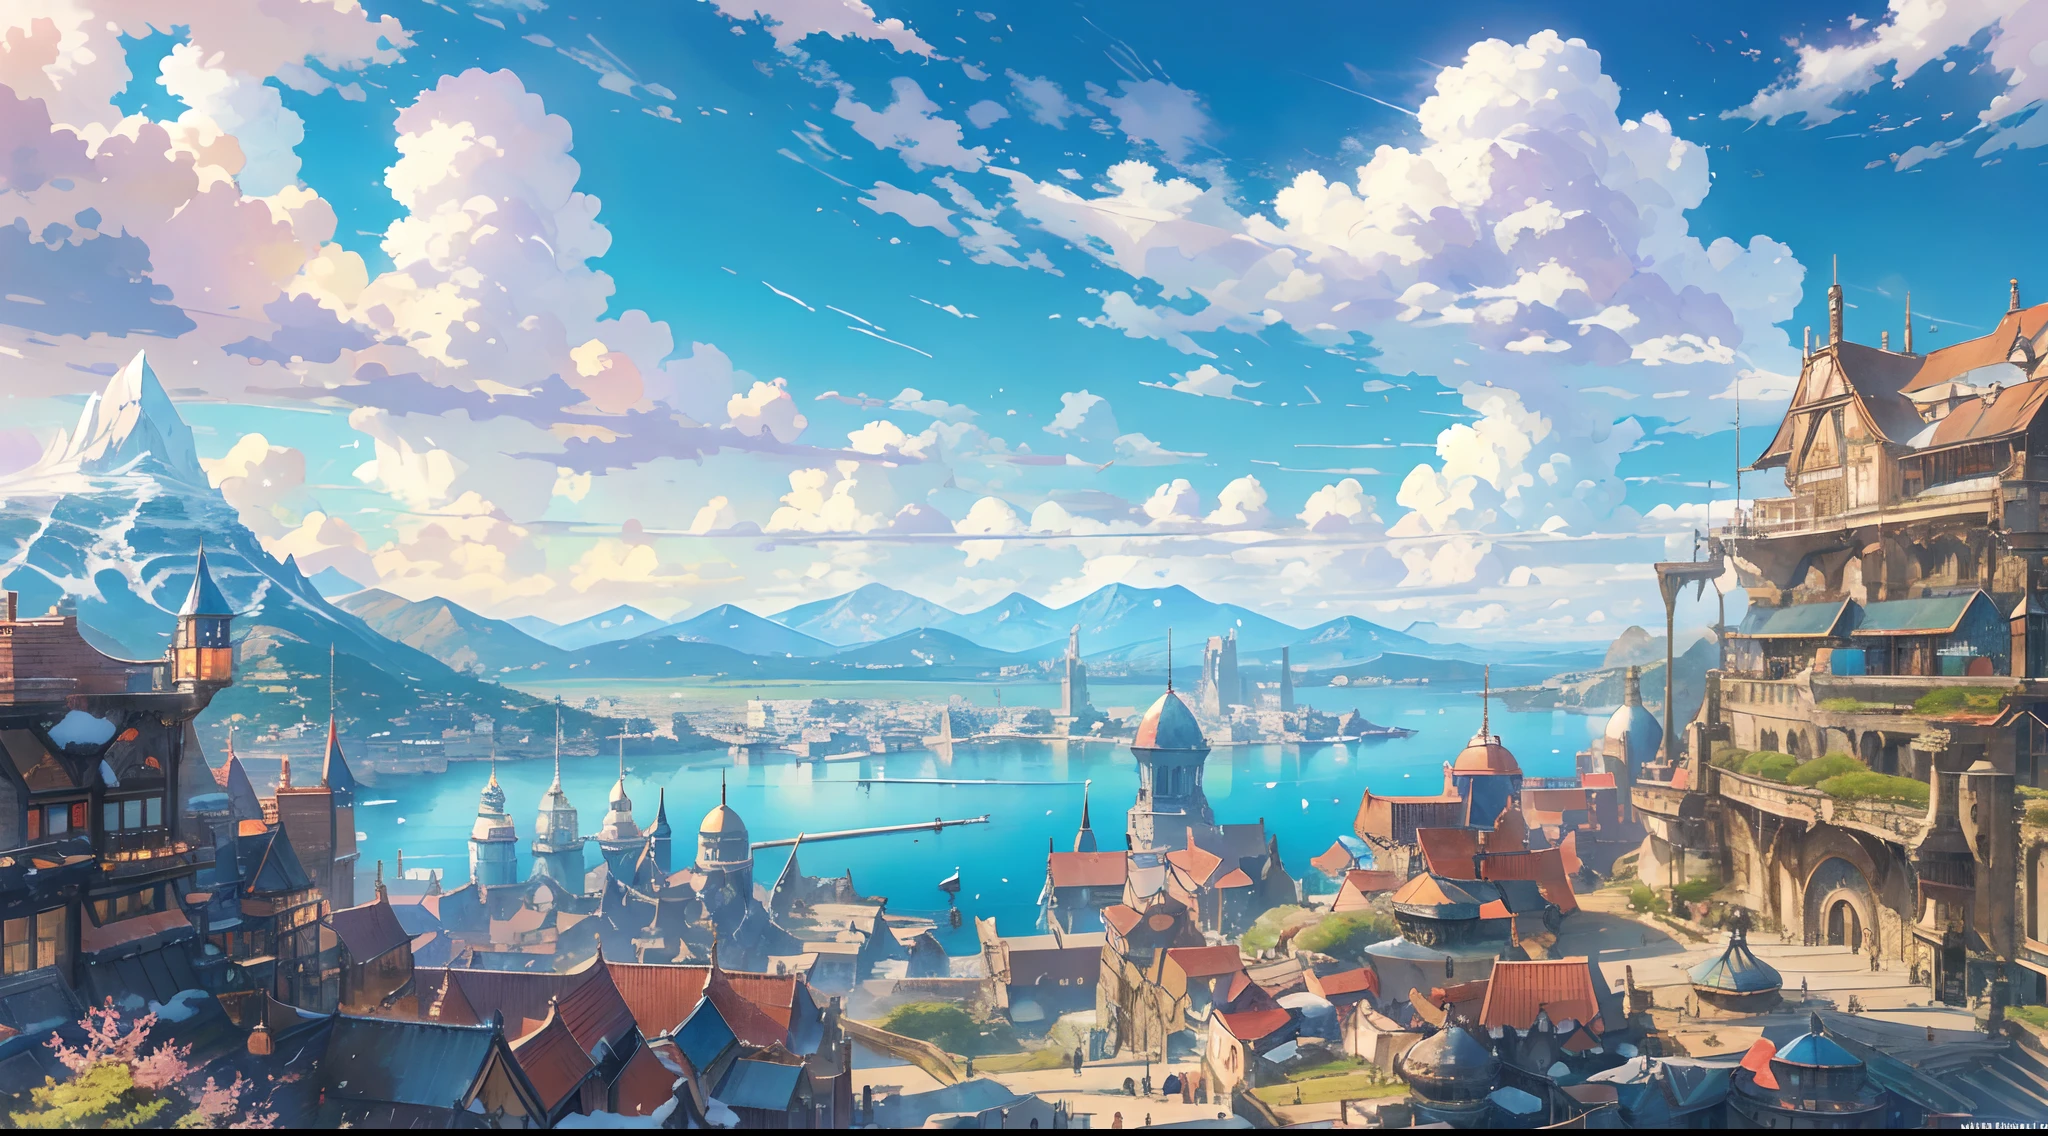 représente une scène d&#39;une ville portuaire dans un monde fantastique où les navires restent à quai et où la silhouette d&#39;une montagne enneigée peut être vue de loin pendant la journée et le ciel est très clair avec la lumière du soleil au printemps, 8k, couleur vive, Couleur vive et intense, ciel bleu azur, nuages blancs, hdr, ouvrages d&#39;art, Style animé, Final Fantasy, Zelda, Makoto Shinkai, Hayao Miyazaki, extrêmement détaillé, Super détaillé, croustillant, image nette, meilleur résultat, Éclairage très détaillé et magique, détails complexes de la ville, paysage, proportions réalistes, la plus haute qualité, chef-d&#39;œuvre, Extérieur, paysage magique, architecture parfaite, Bâtiment parfait, Caractère parfait